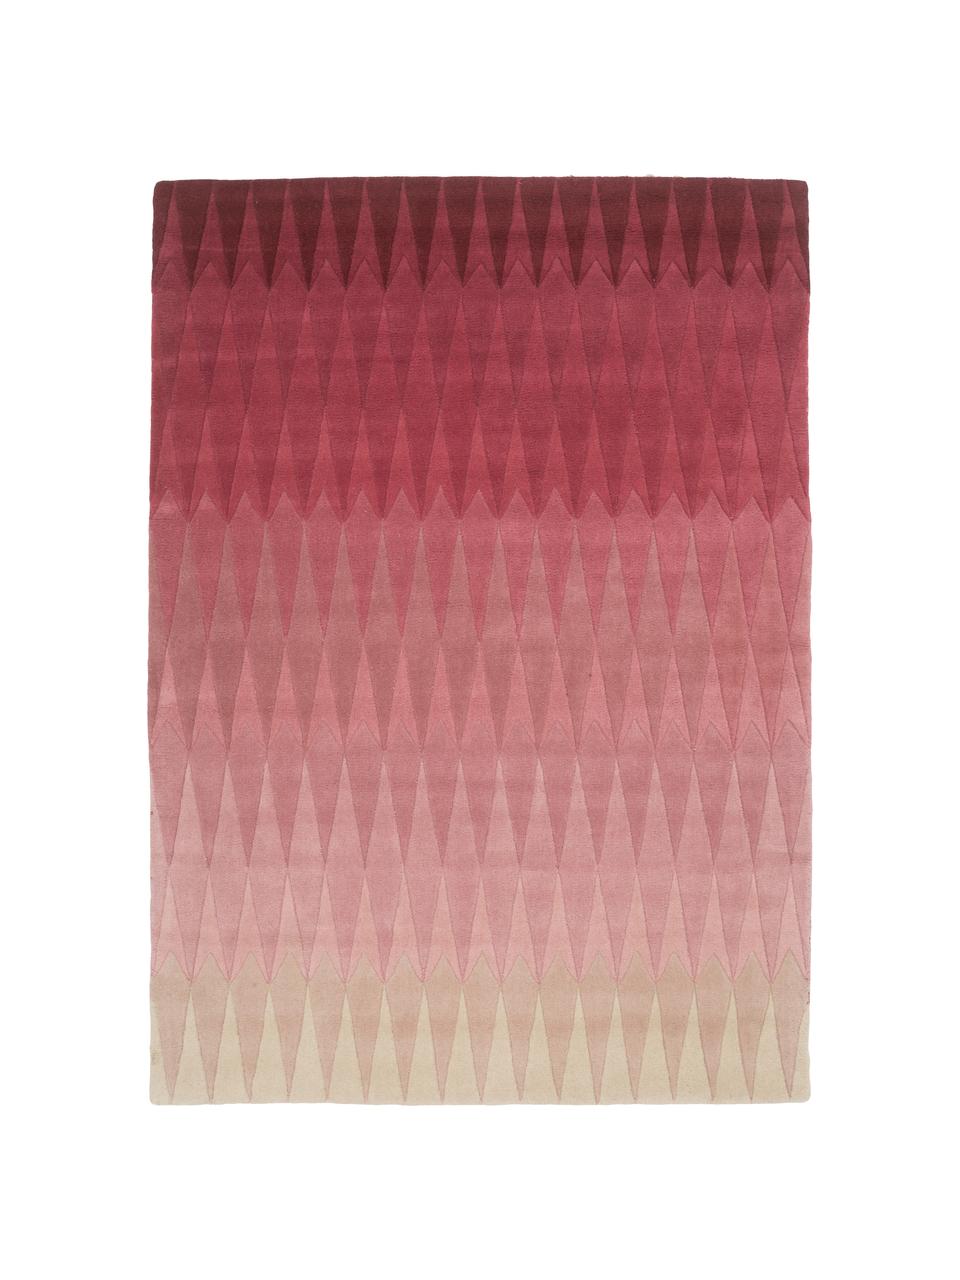 Alfombra artesanal de lana de diseño Acacia, Rosa, An 170 x L 240 cm (Tamaño M)